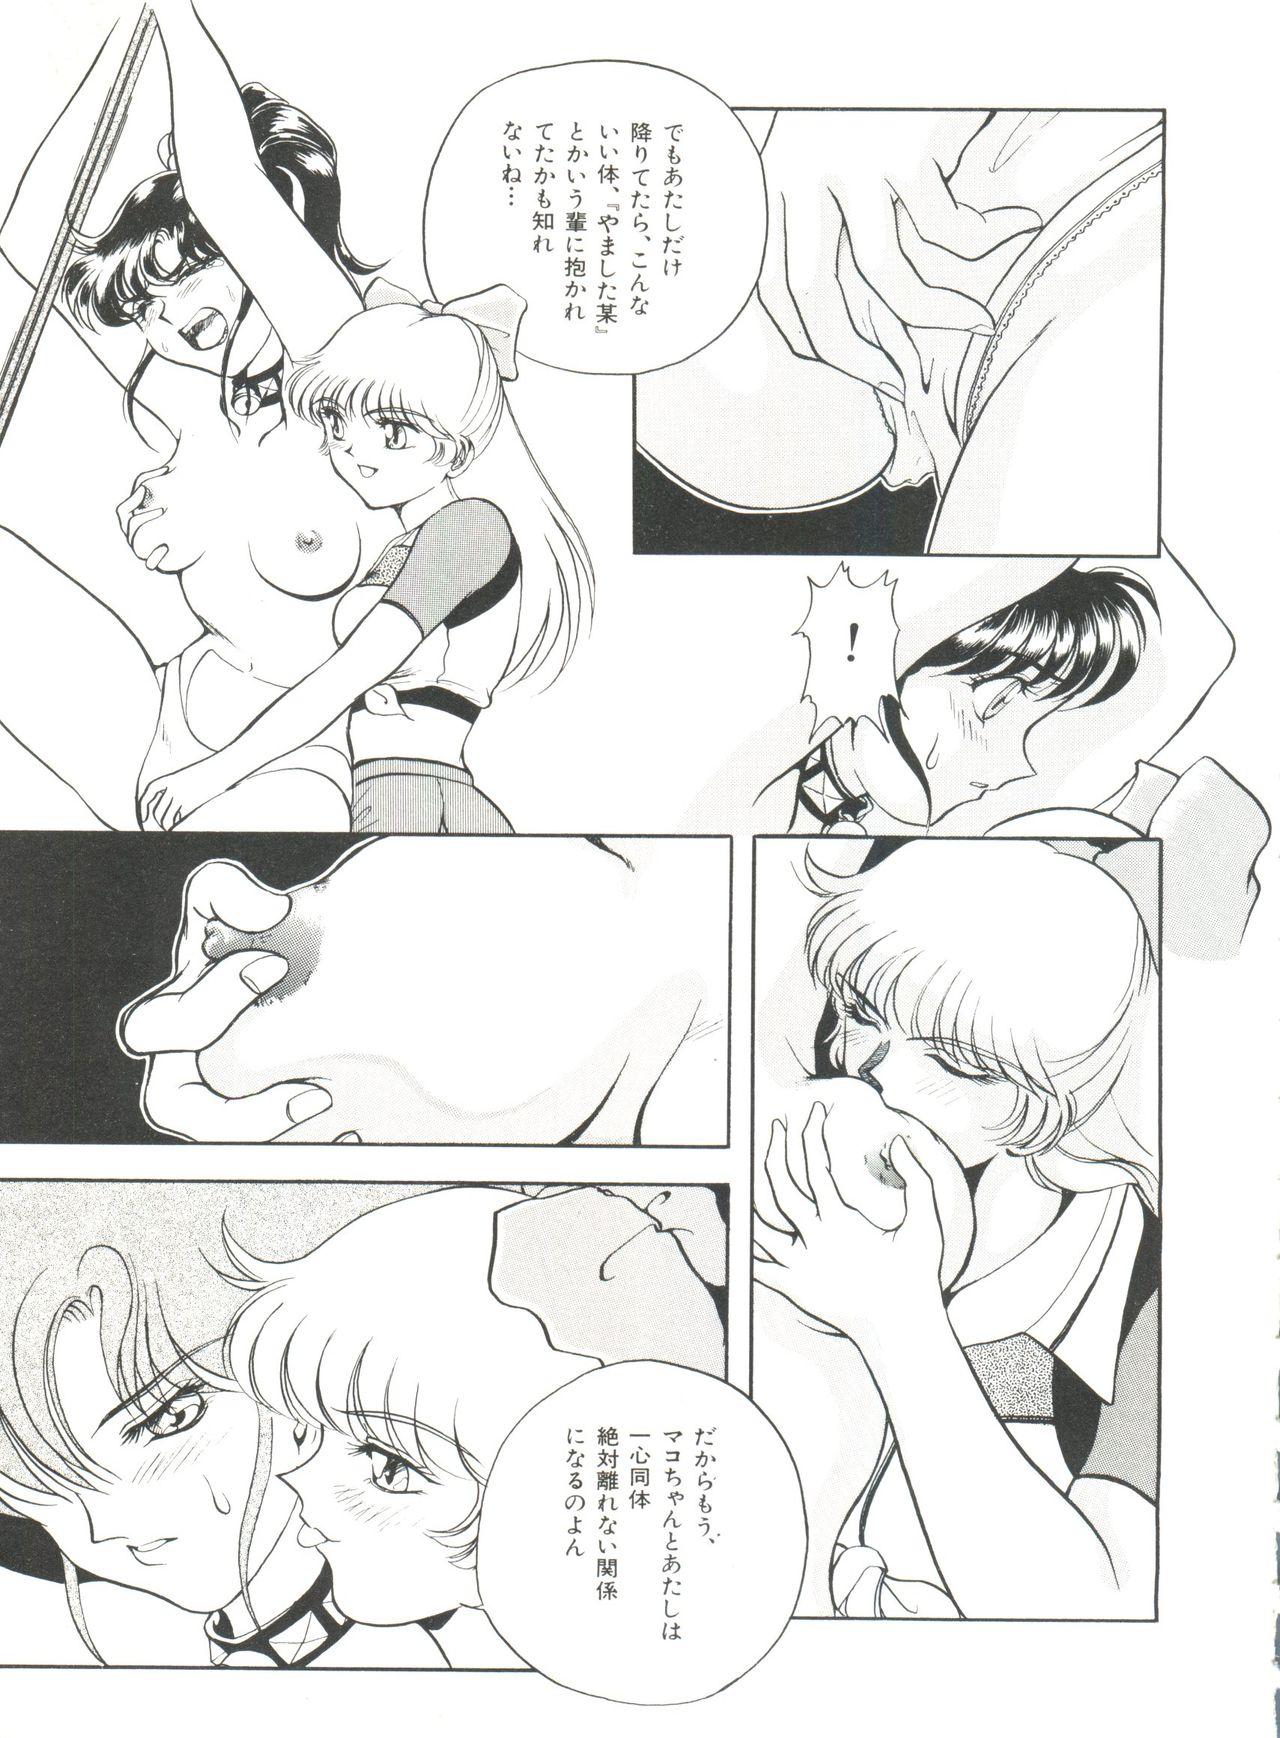 Bishoujo Doujinshi Anthology 18 - Moon Paradise 11 Tsuki no Rakuen 96